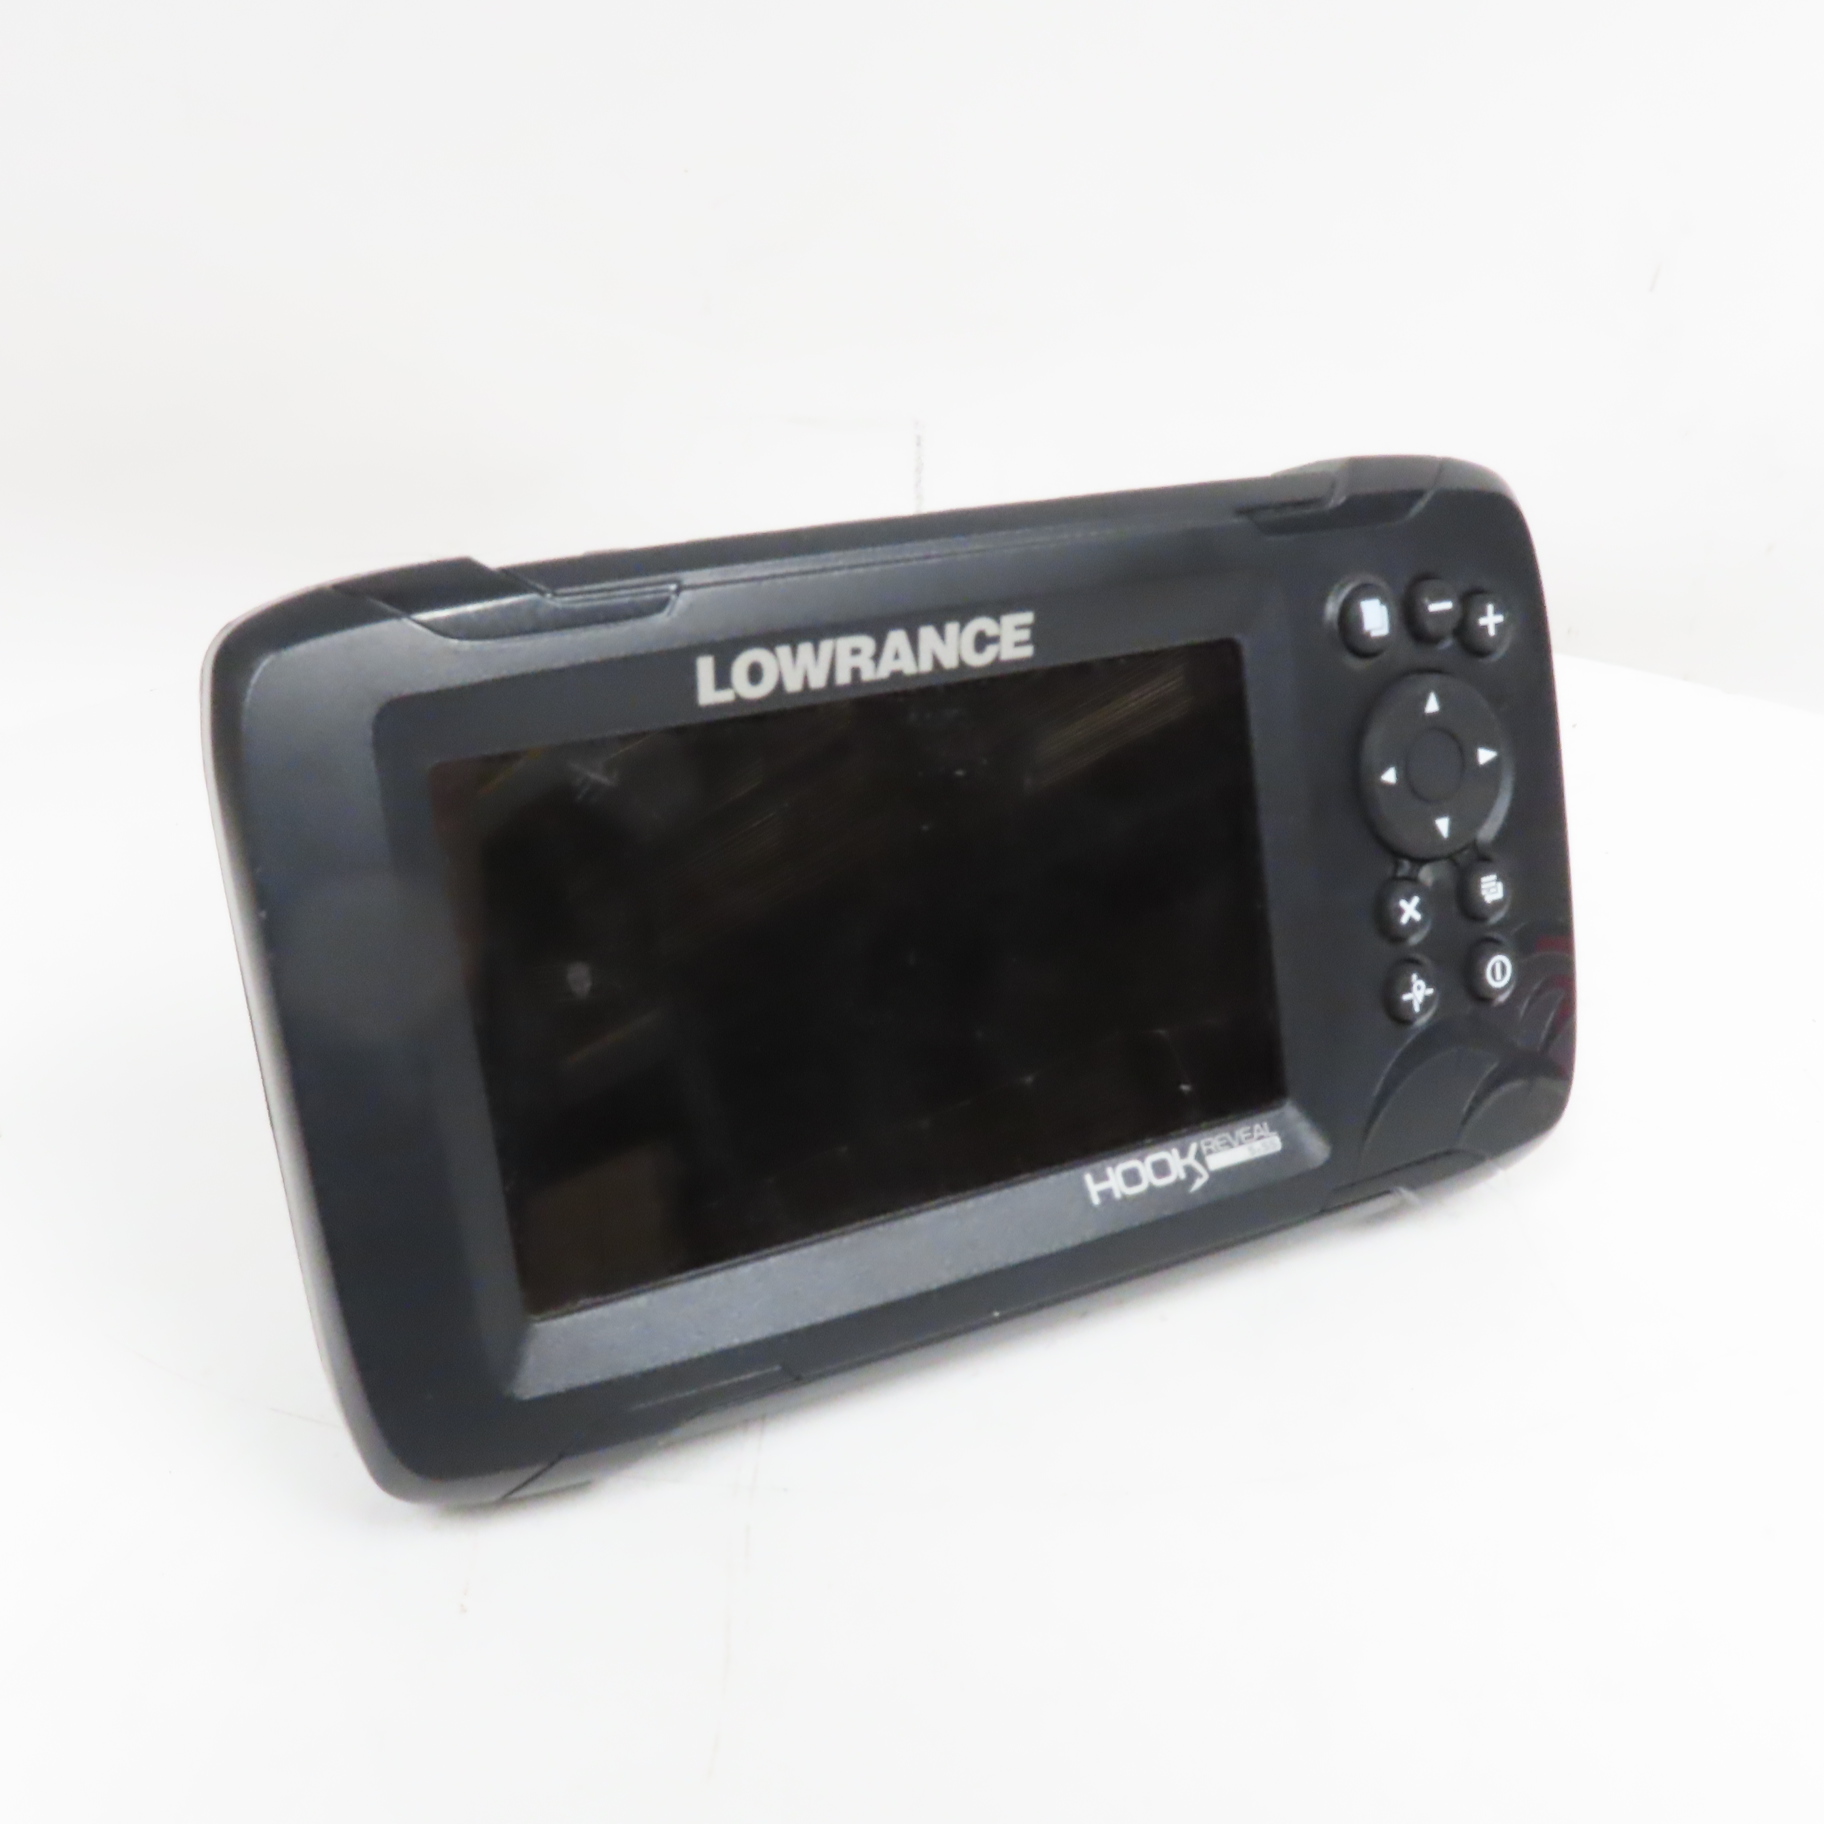 Lowrance HOOK Reveal 5 SplitShot 5 Digital CHIRP/Sonar Fishfinder